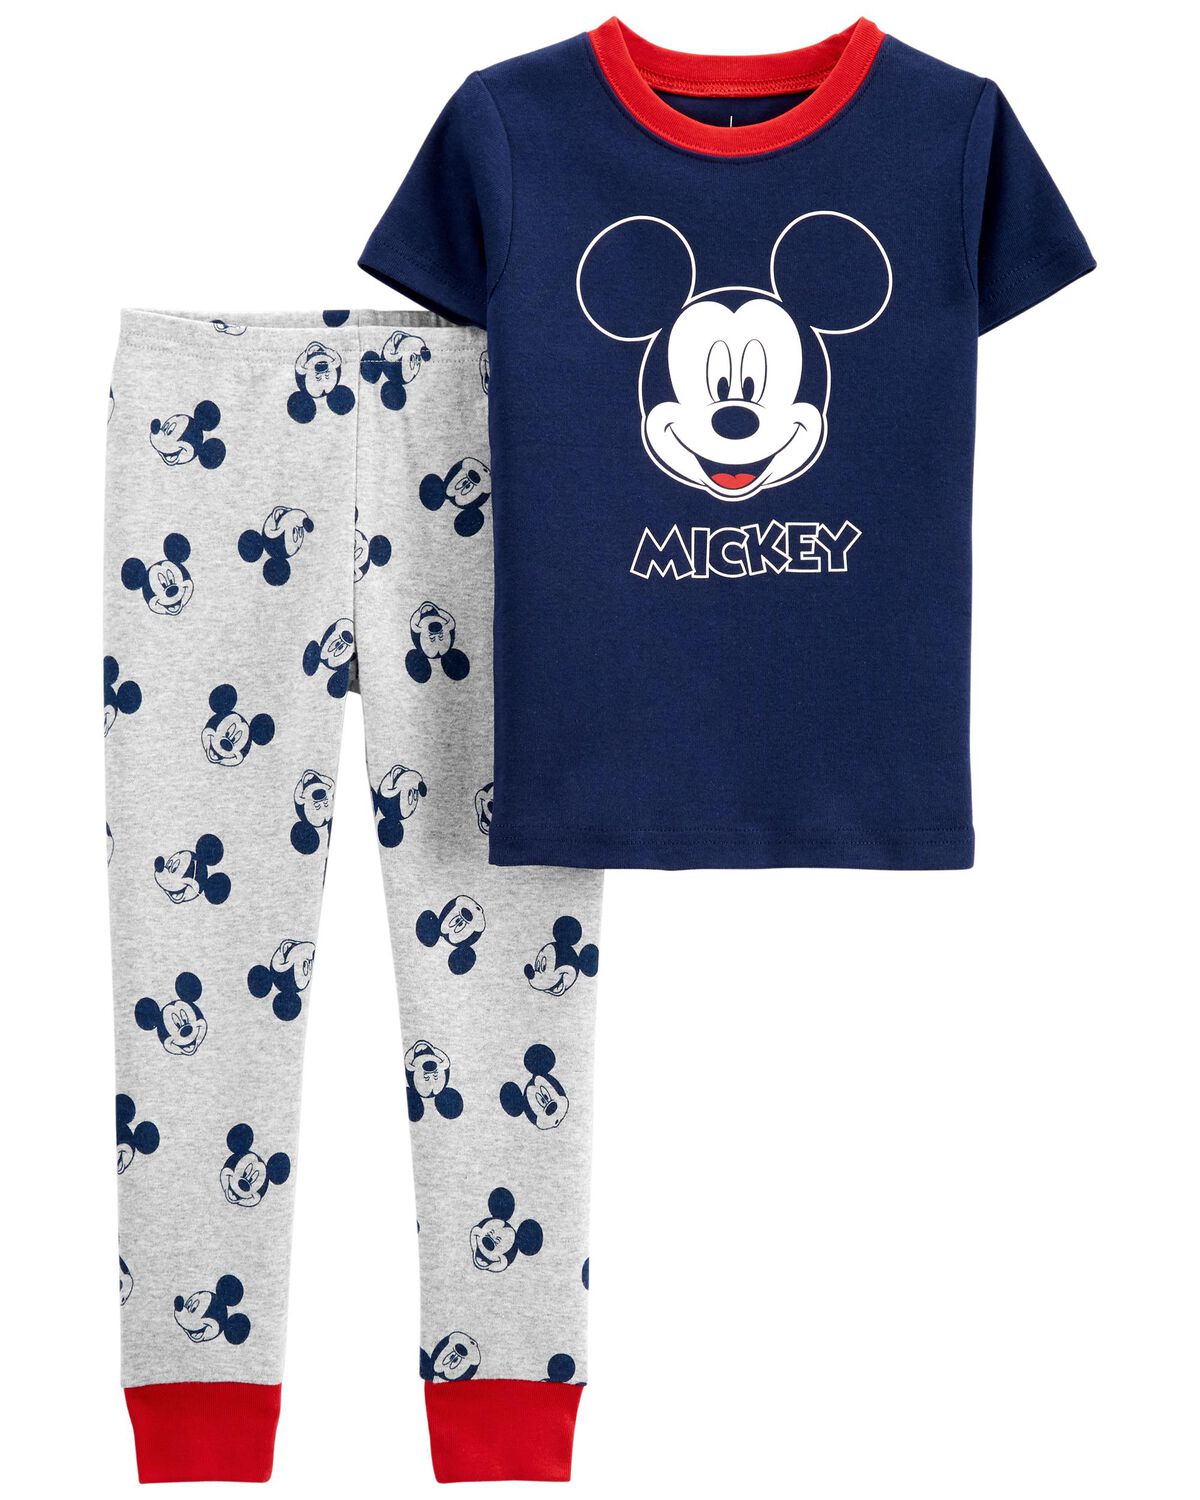 Baby 2-Piece Mickey Mouse 100% Snug Fit Cotton Pajamas